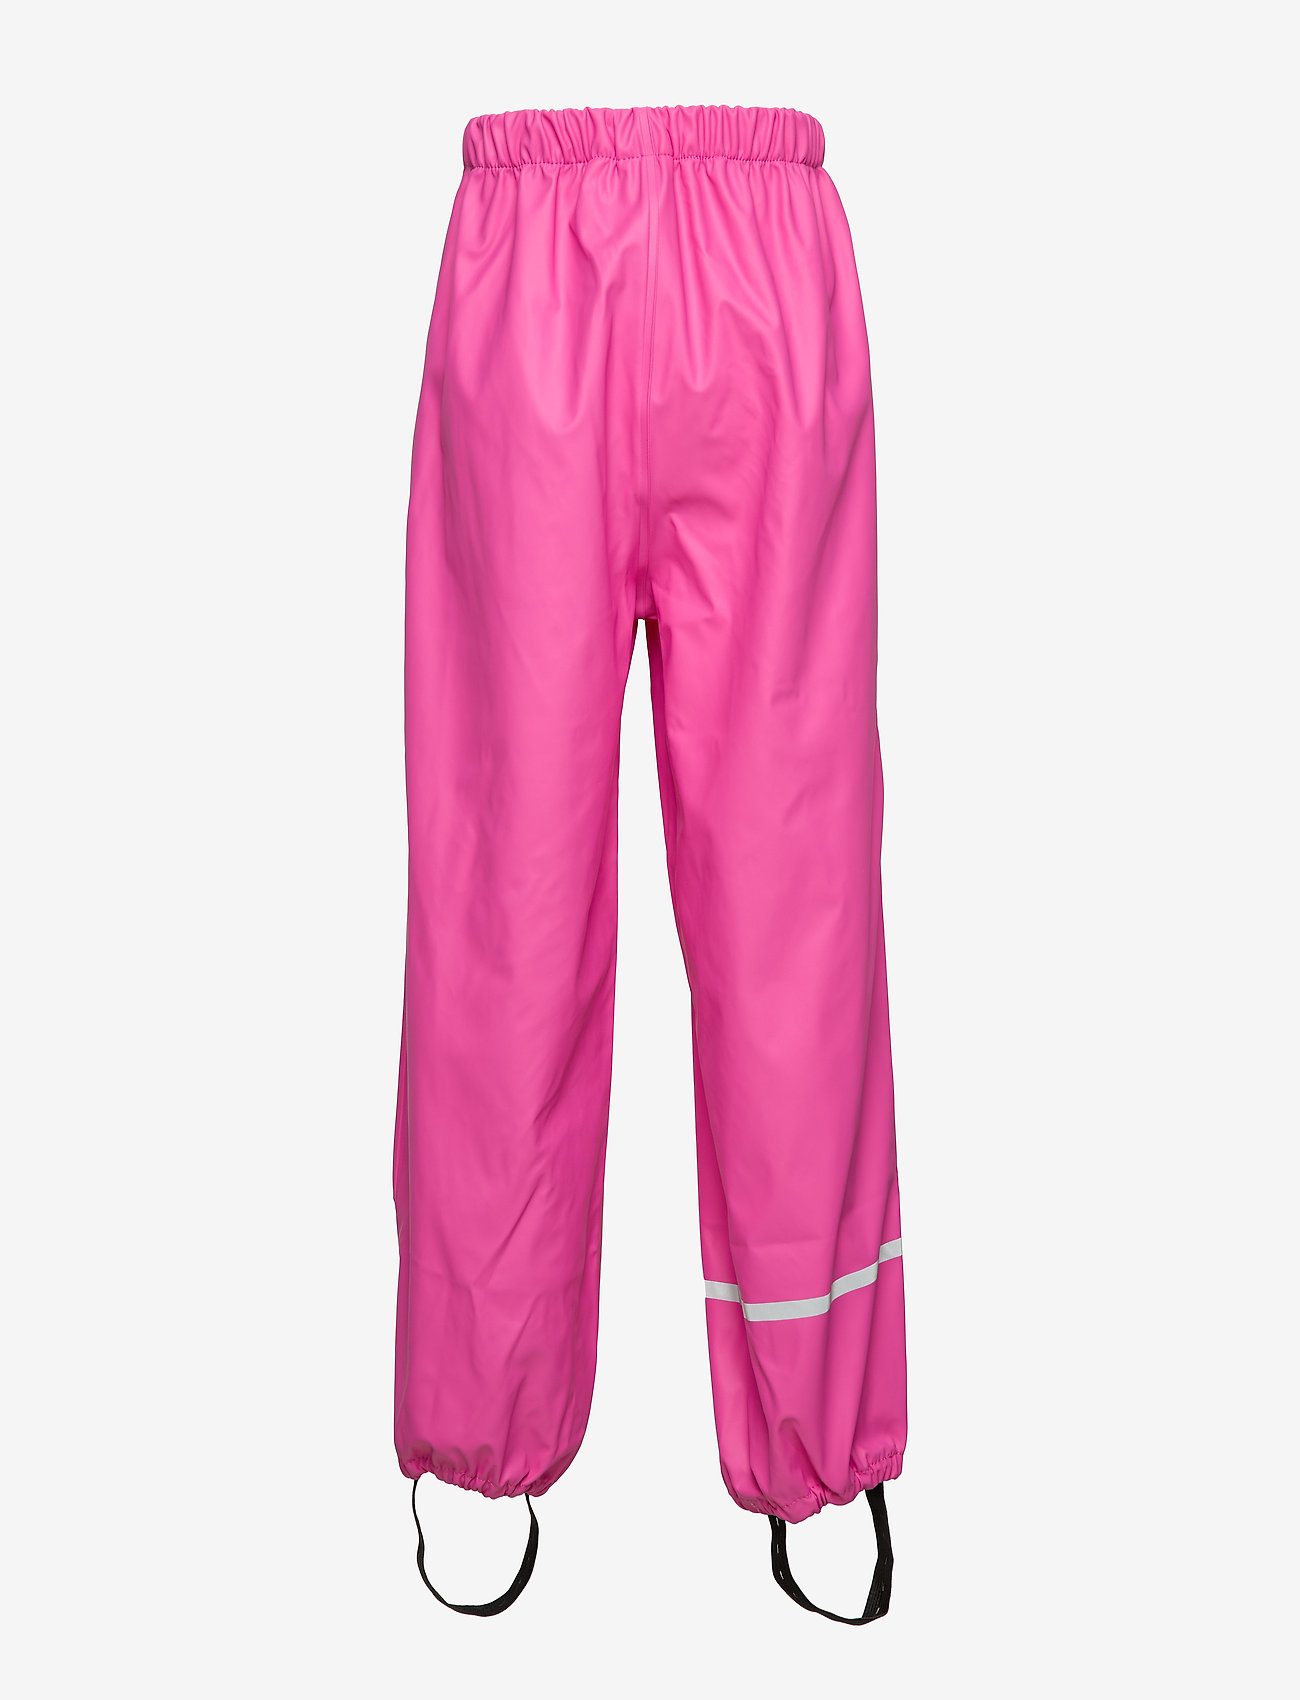 CeLaVi - Rainwear pants -solid PU - die niedrigsten preise - real pink - 1